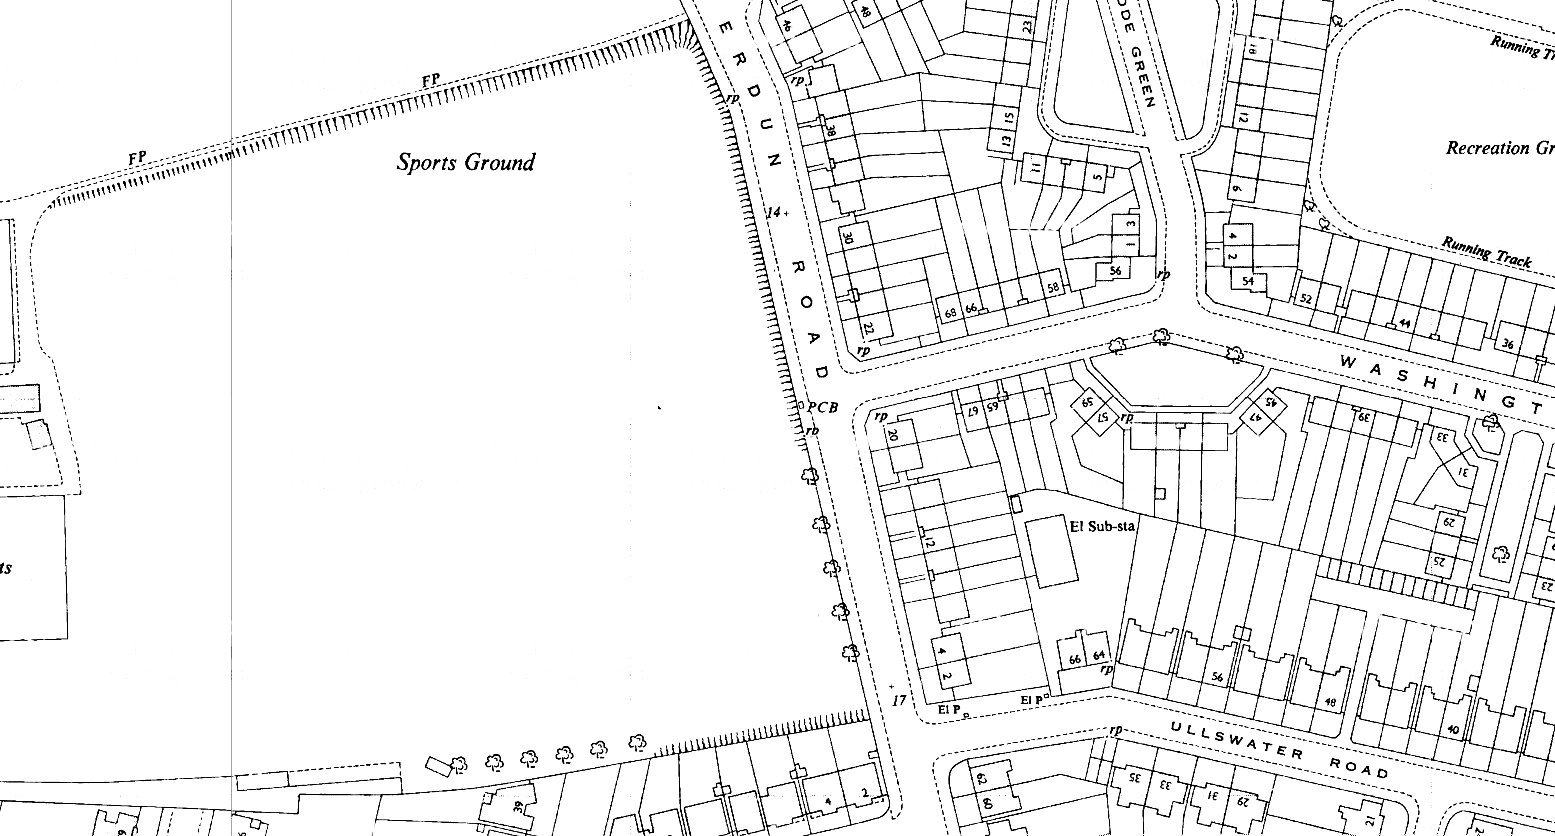 V21--Verdun Road, Castelnau Box--1952 OS map extract 1-1250.png